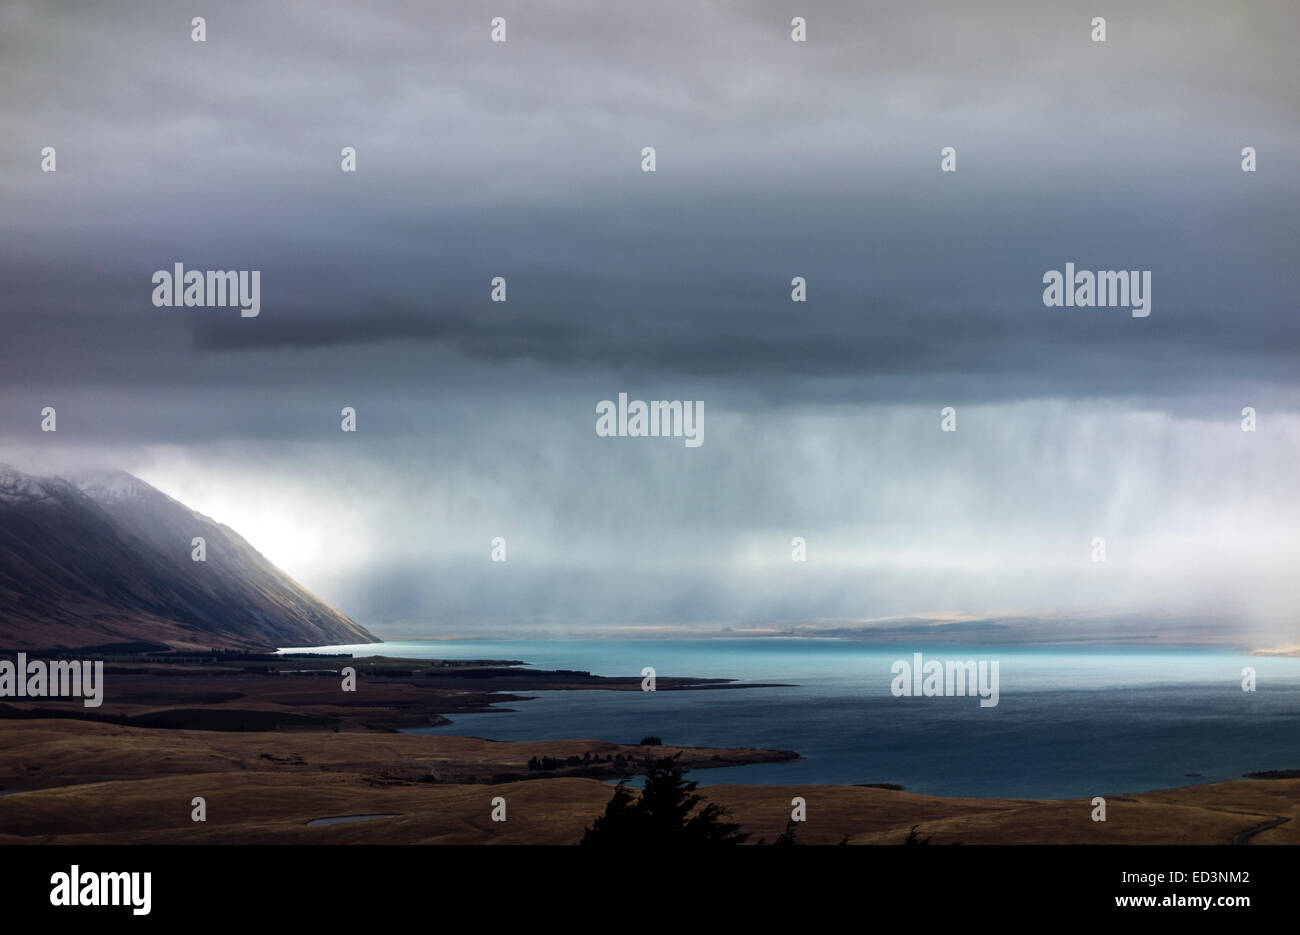 Lago Tekapo resumen en caso de mal tiempo, lluvias de verano. Vista panorámica desde el observatorio de la Universidad Mount John. Nueva Zelandia. Foto de stock